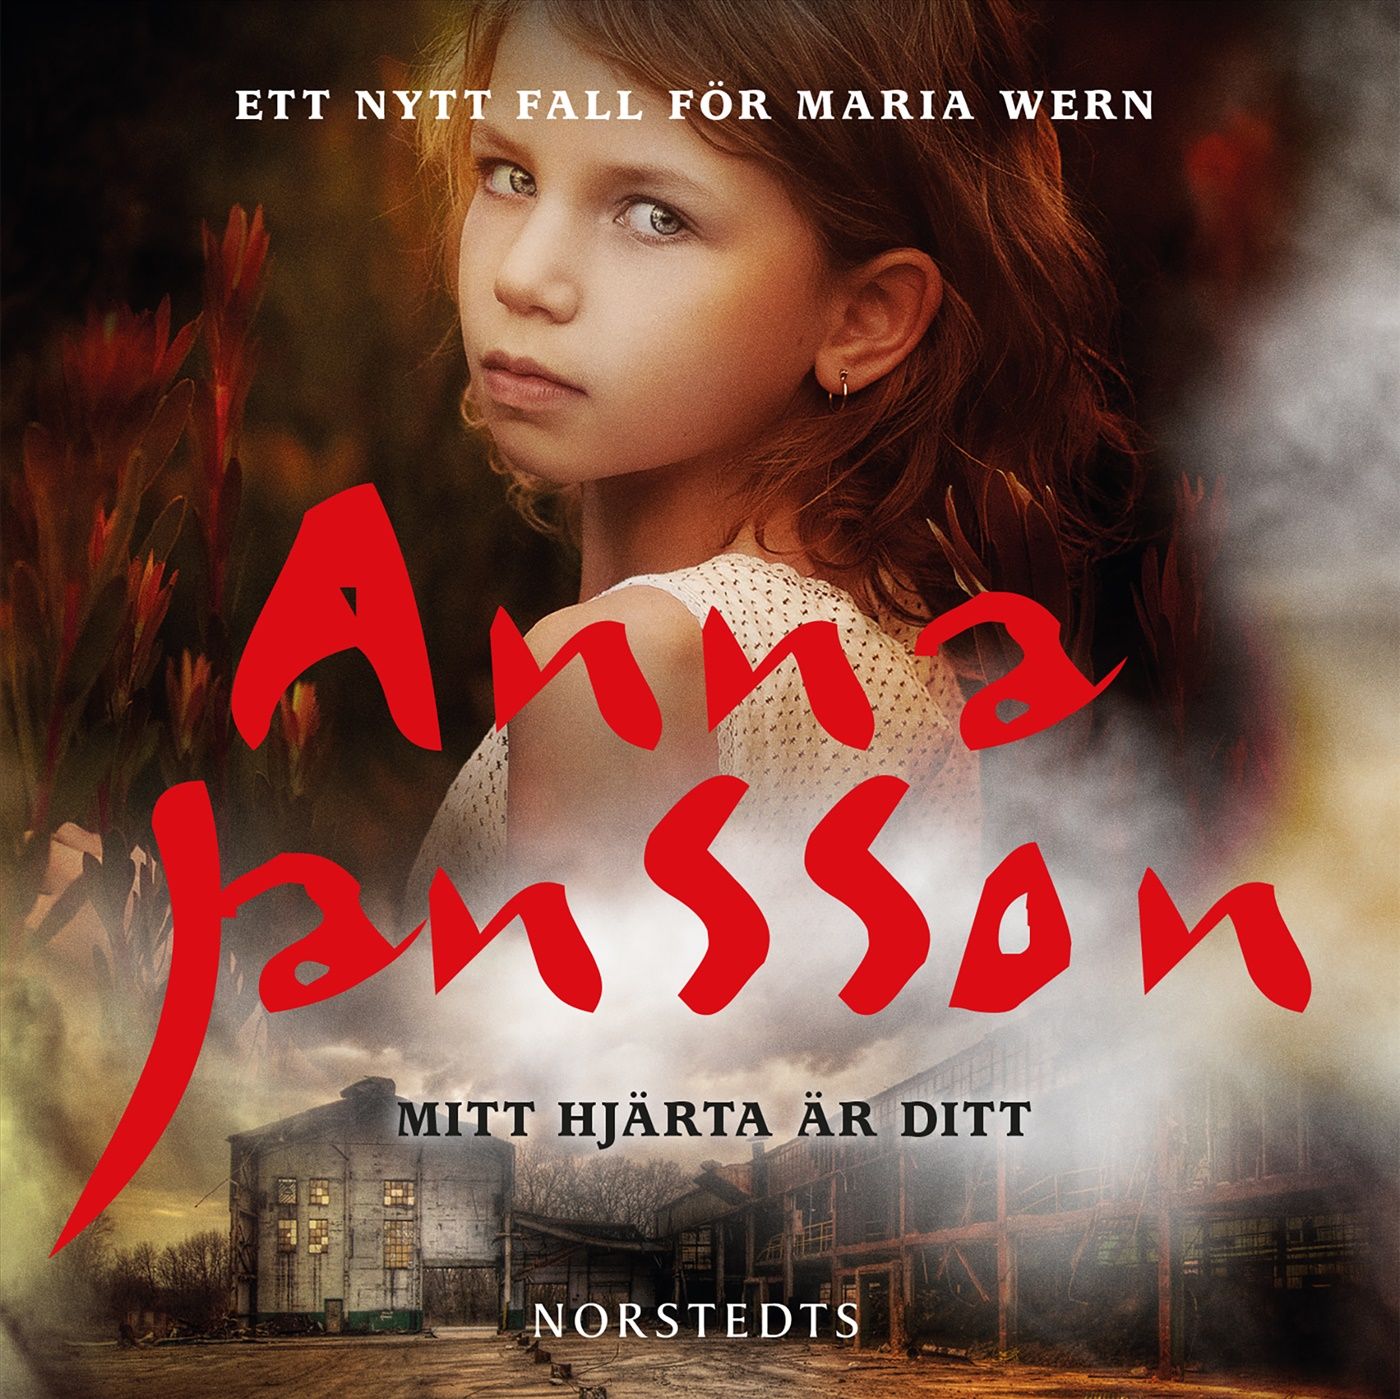 Mitt hjärta är ditt, audiobook by Anna Jansson